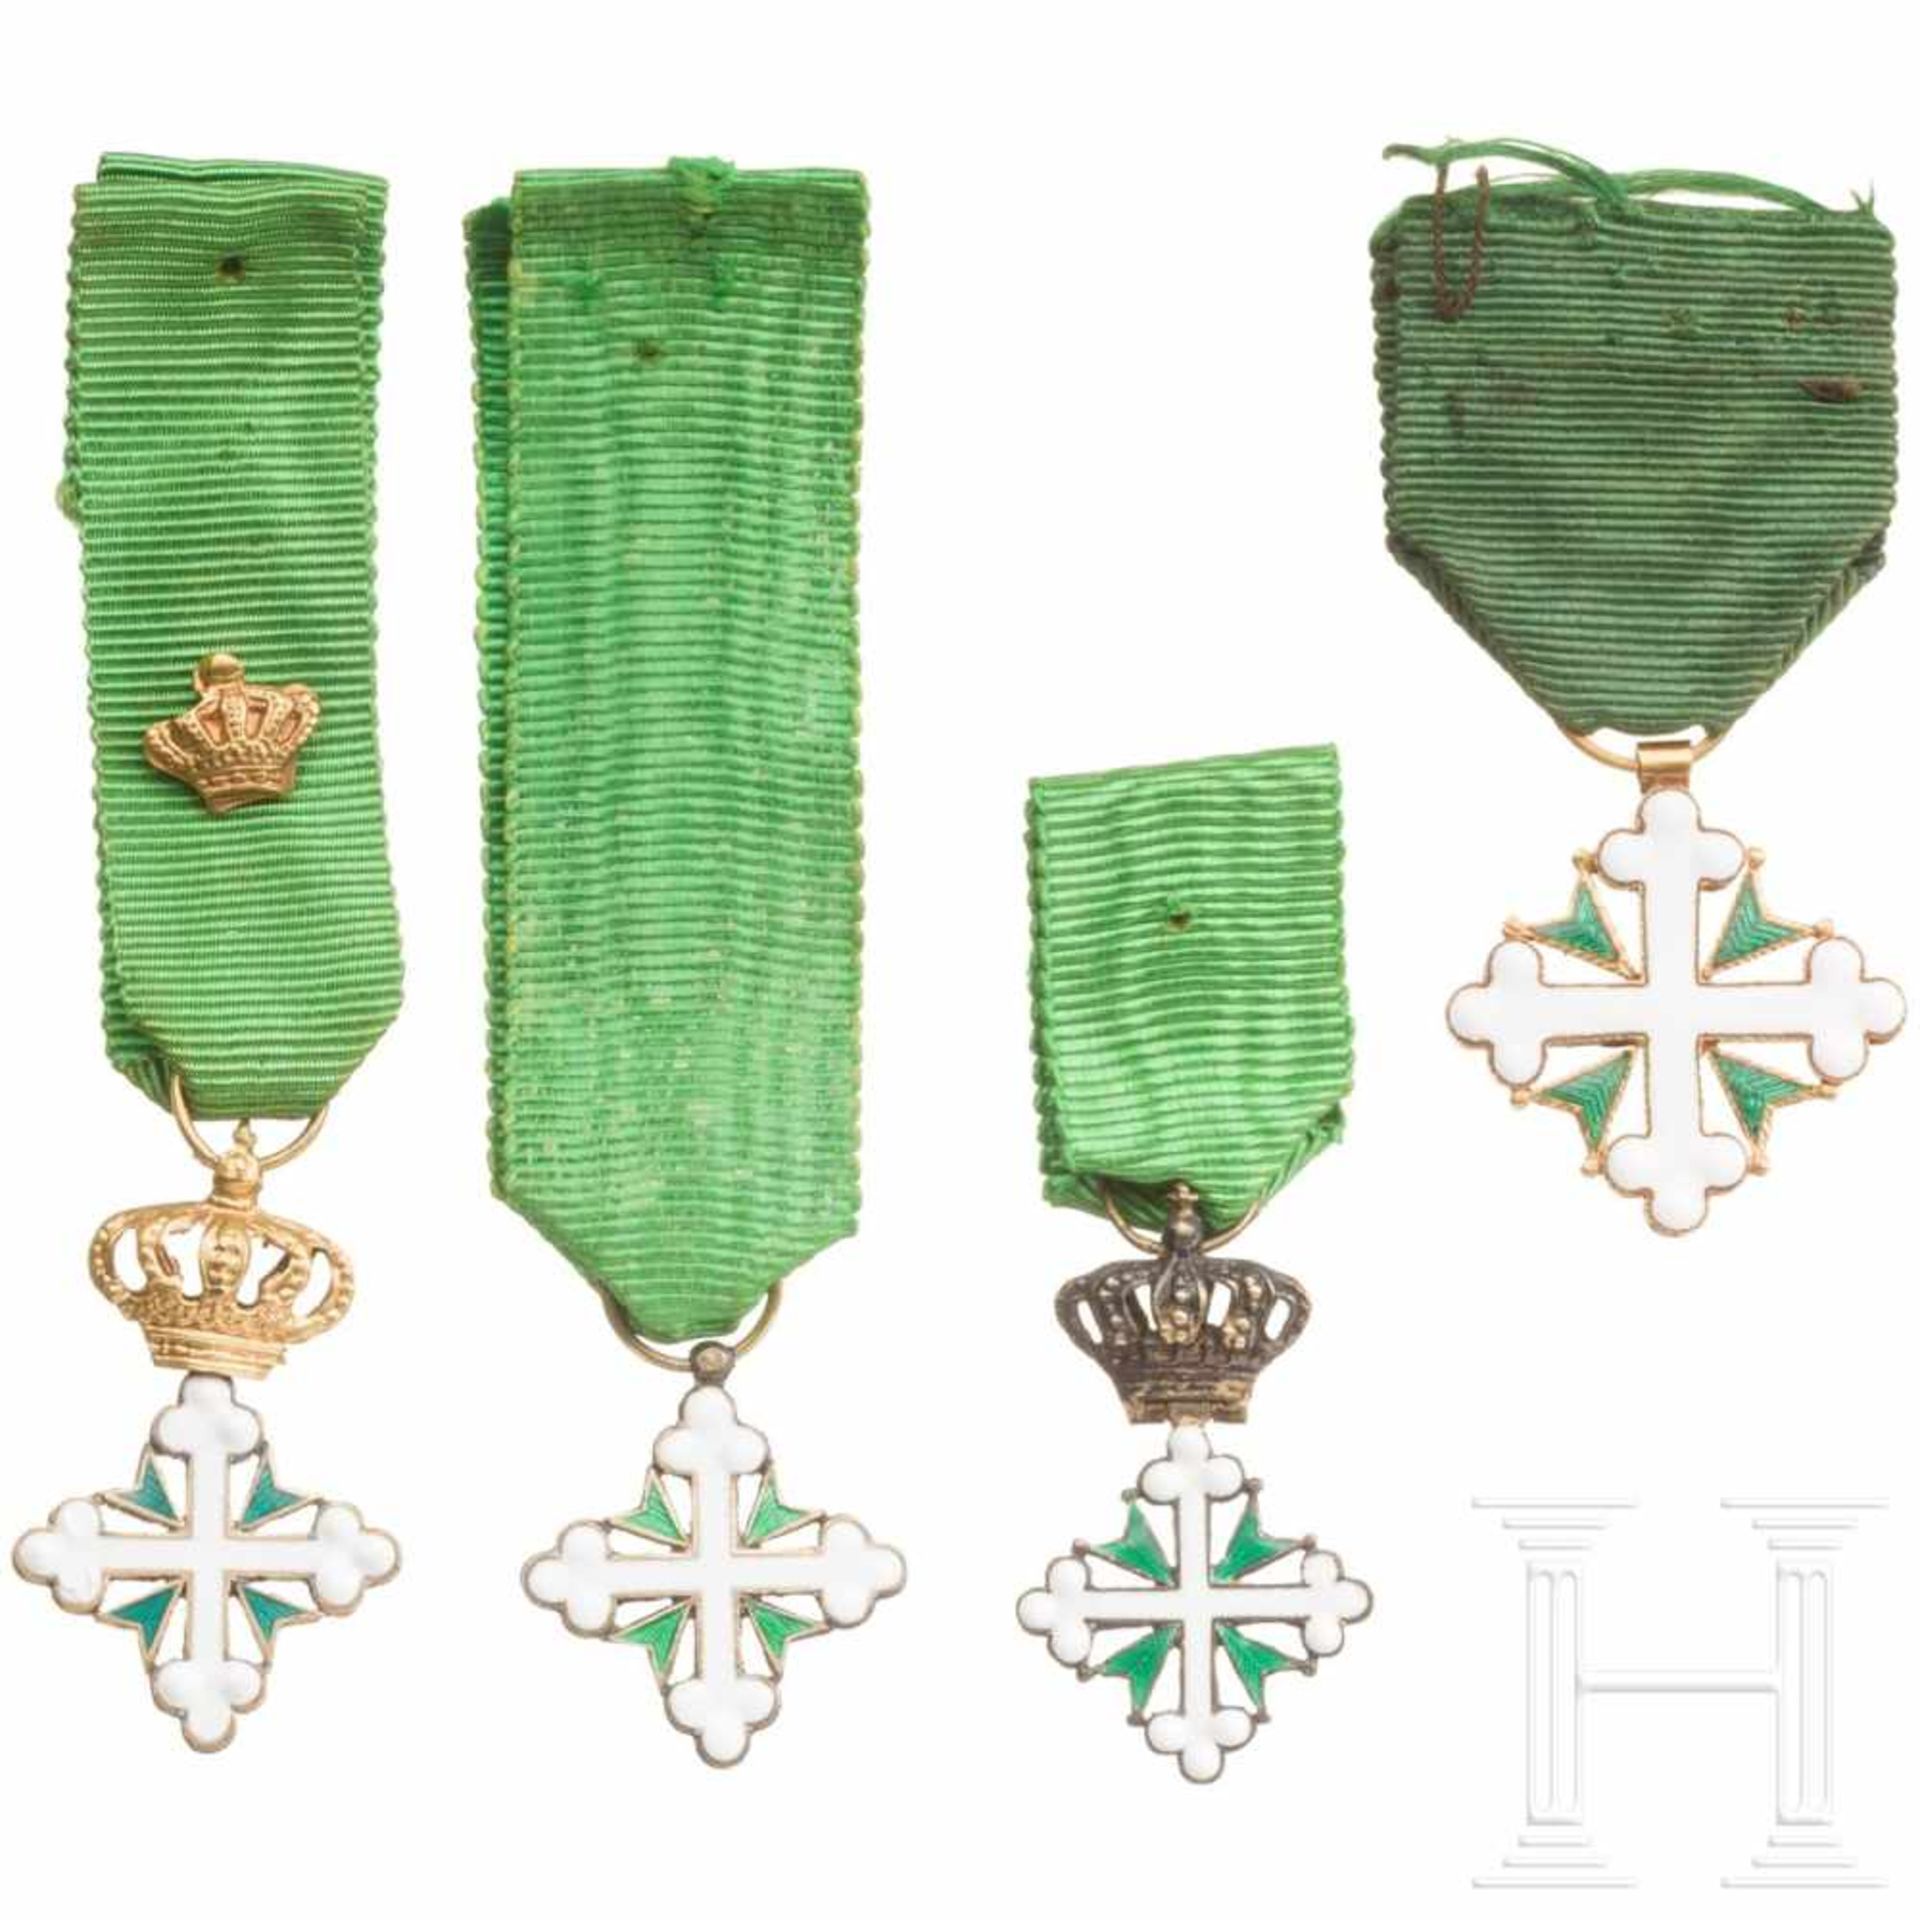 Italien - Orden der heiligen Mauritius und Lazarus - vier kleine Ordenskreuze, 20. Jhdt.